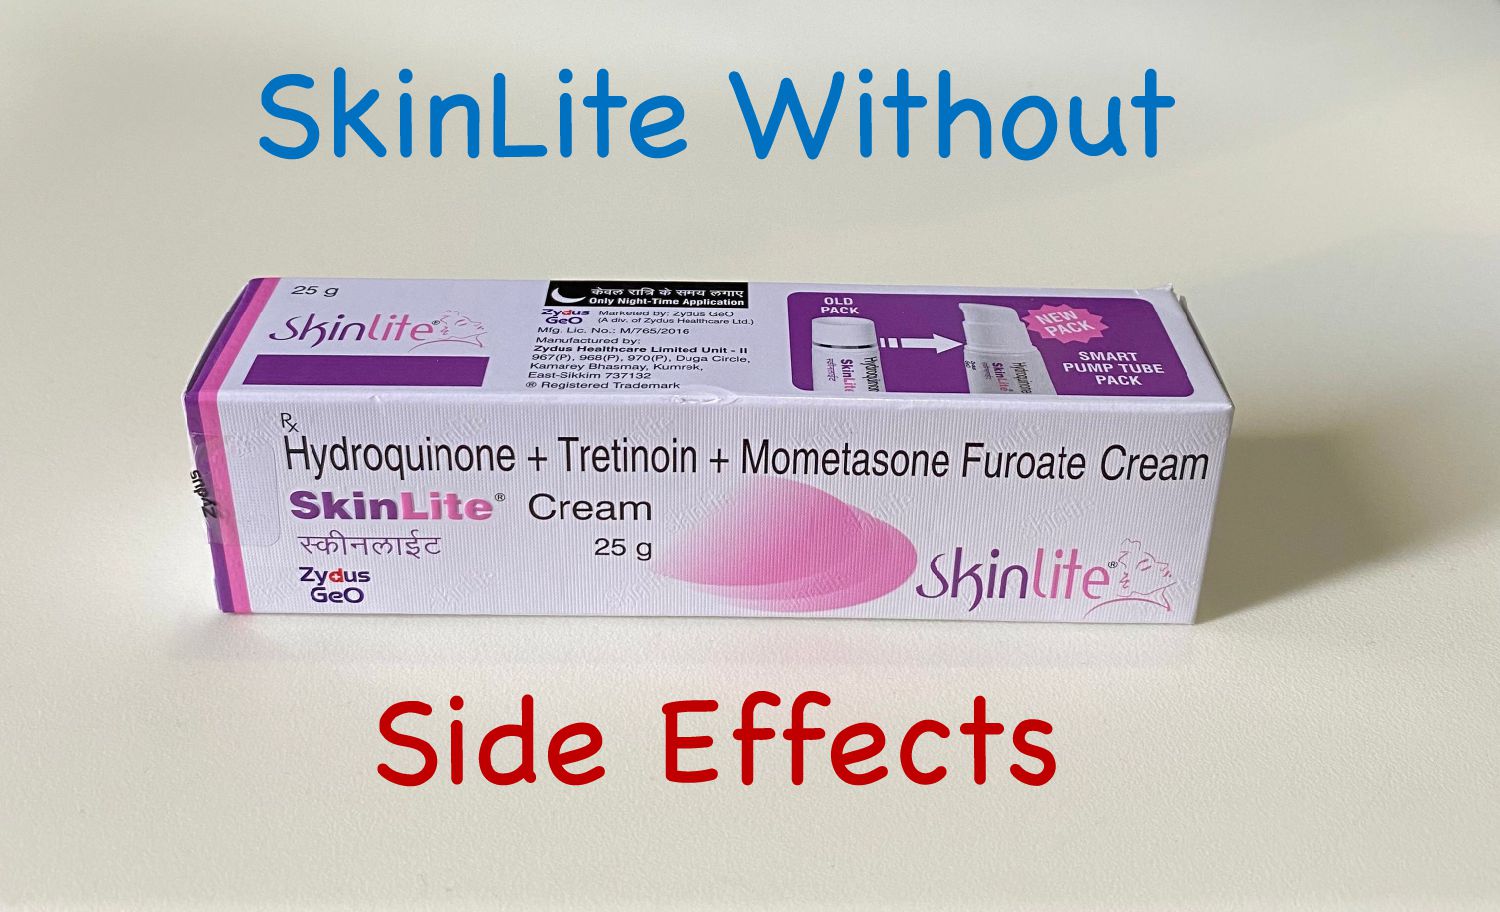 SkinLite Cream